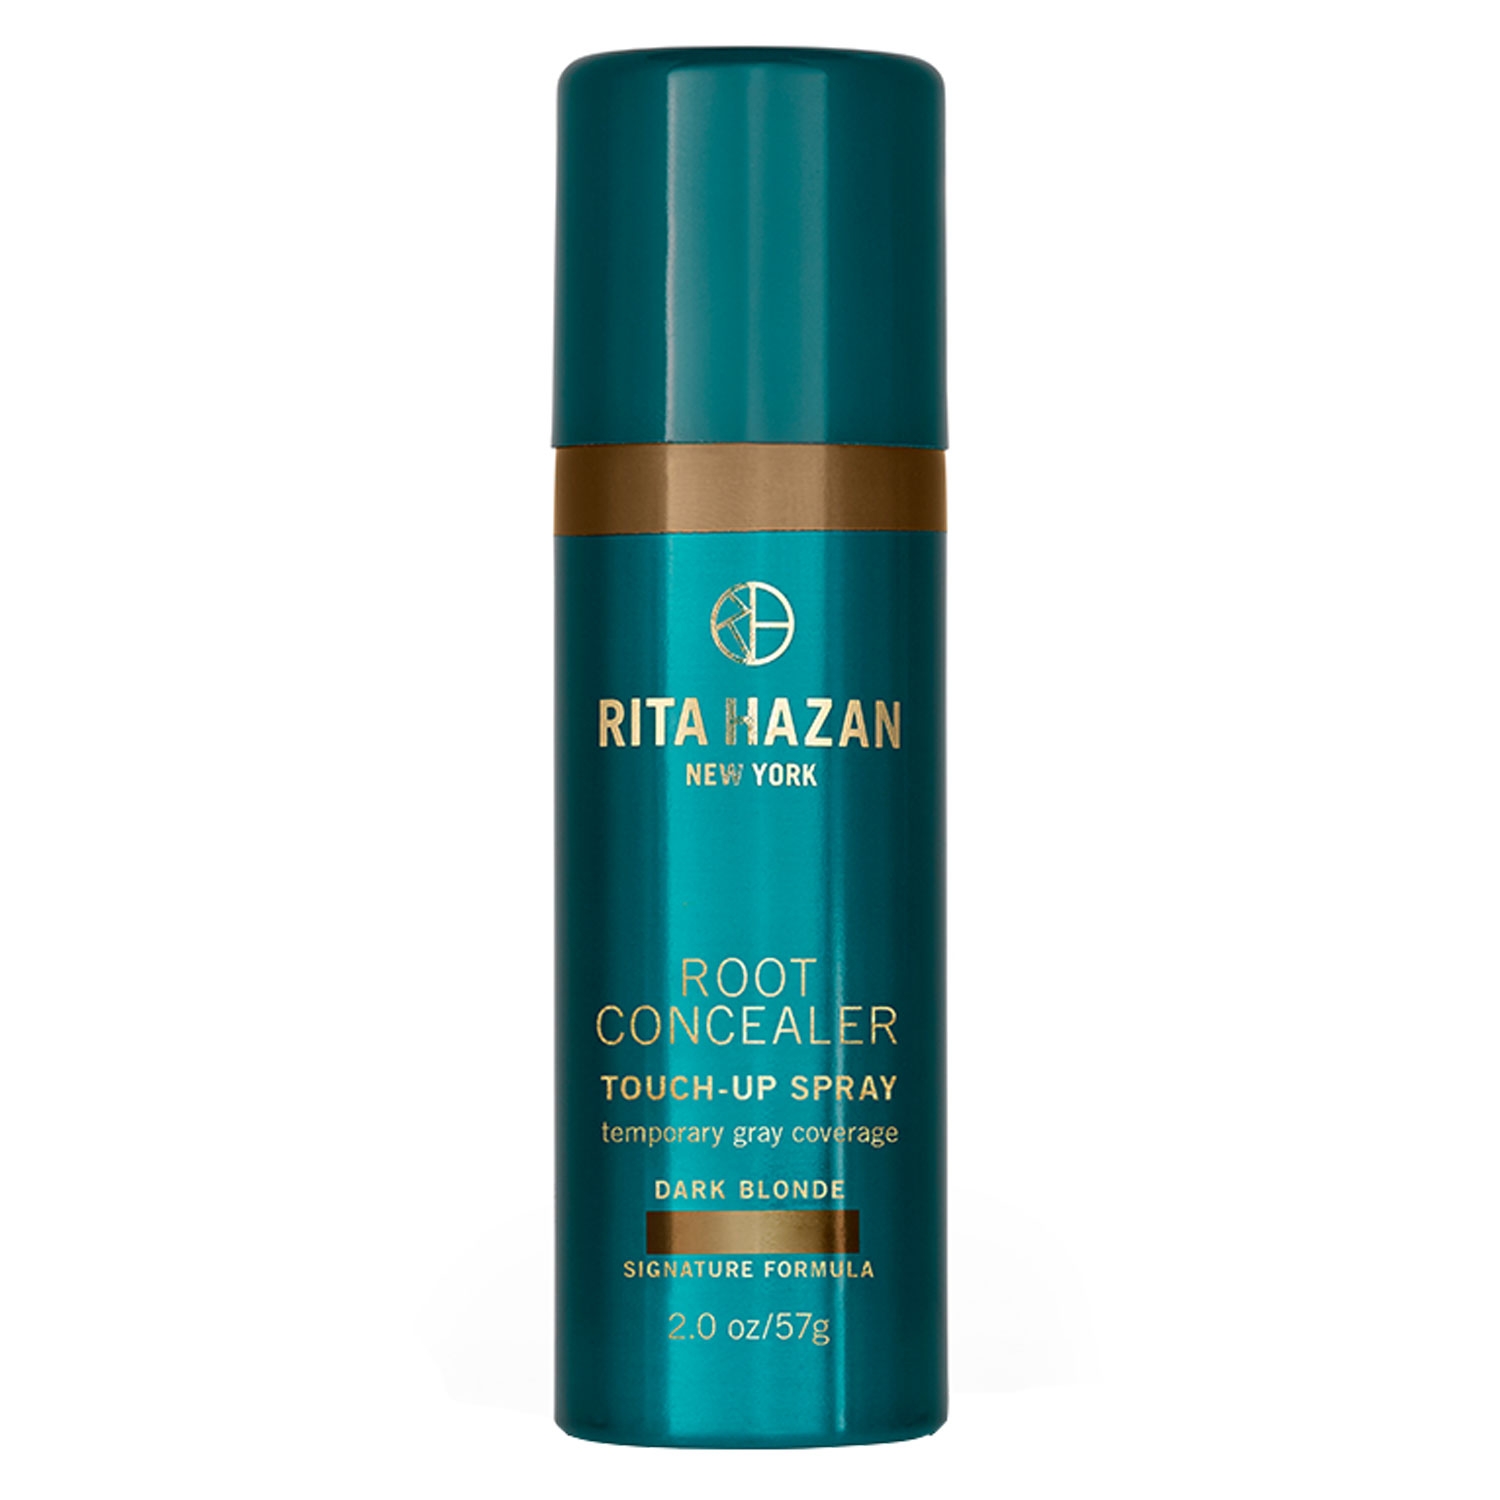 Produktbild von Rita Hazan New York - Root Concealer Touch-Up Spray Dark Blonde